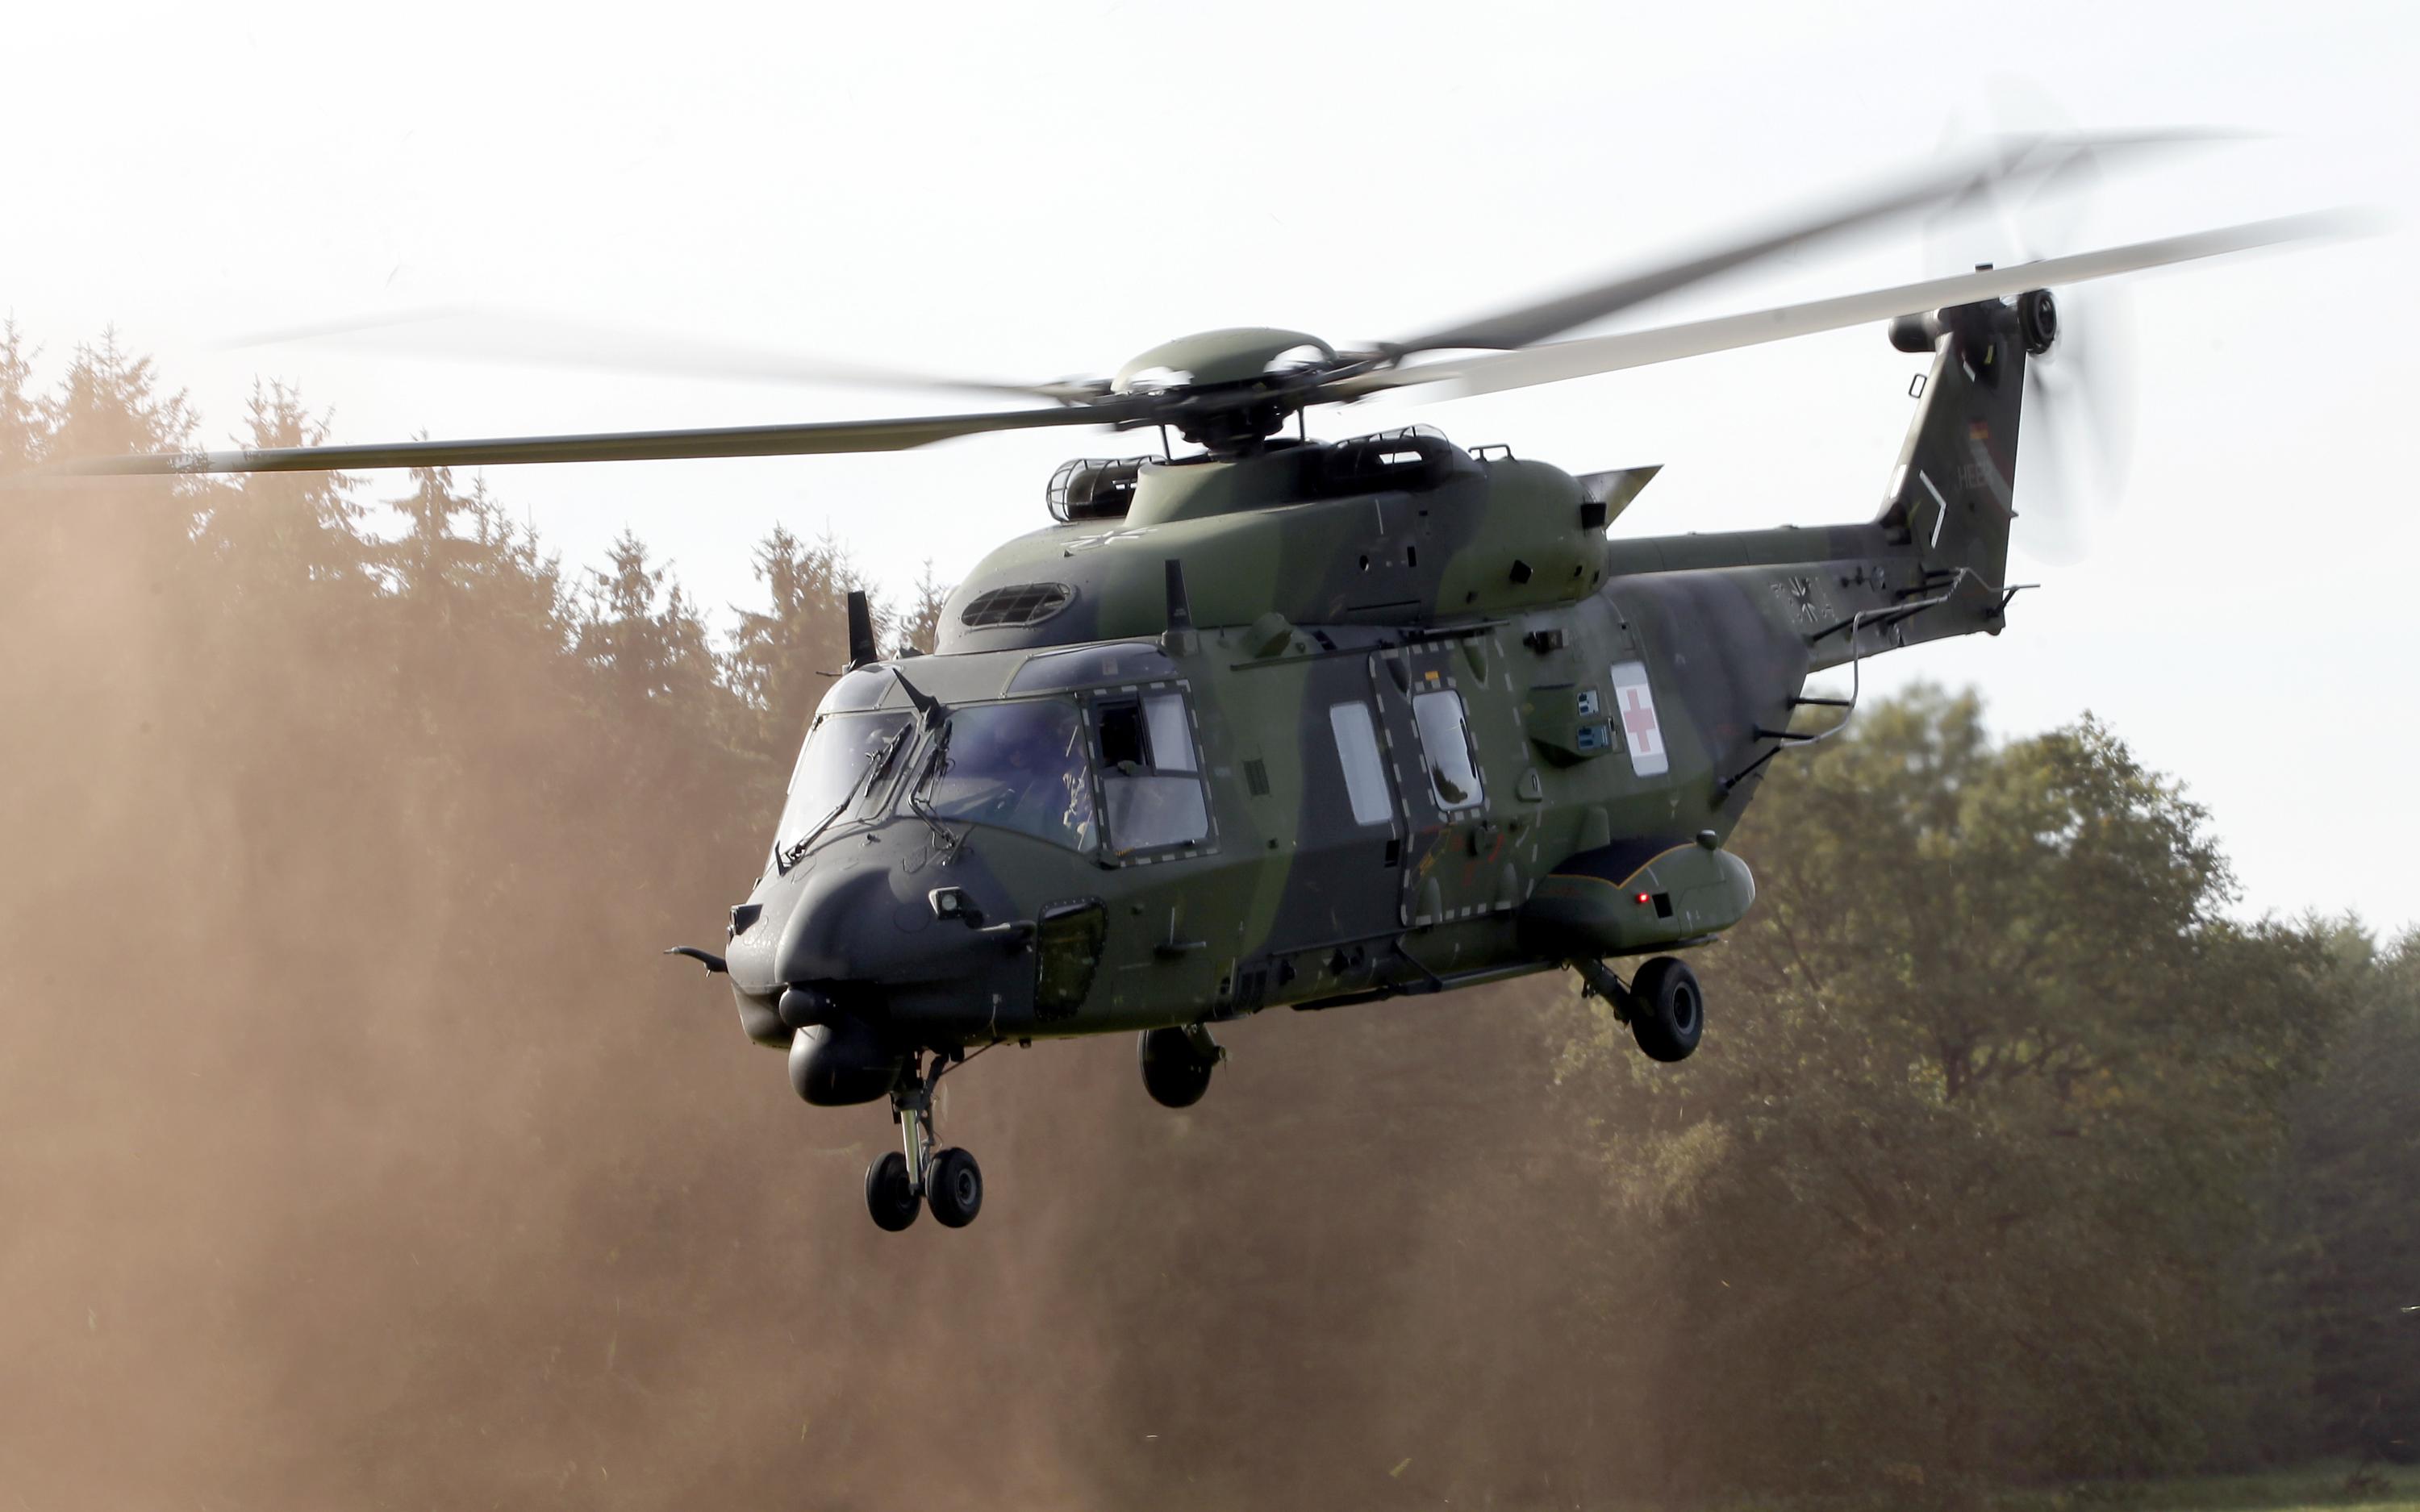 Norge avslutter kontrakt for NH90-helikoptre og ønsker full refusjon